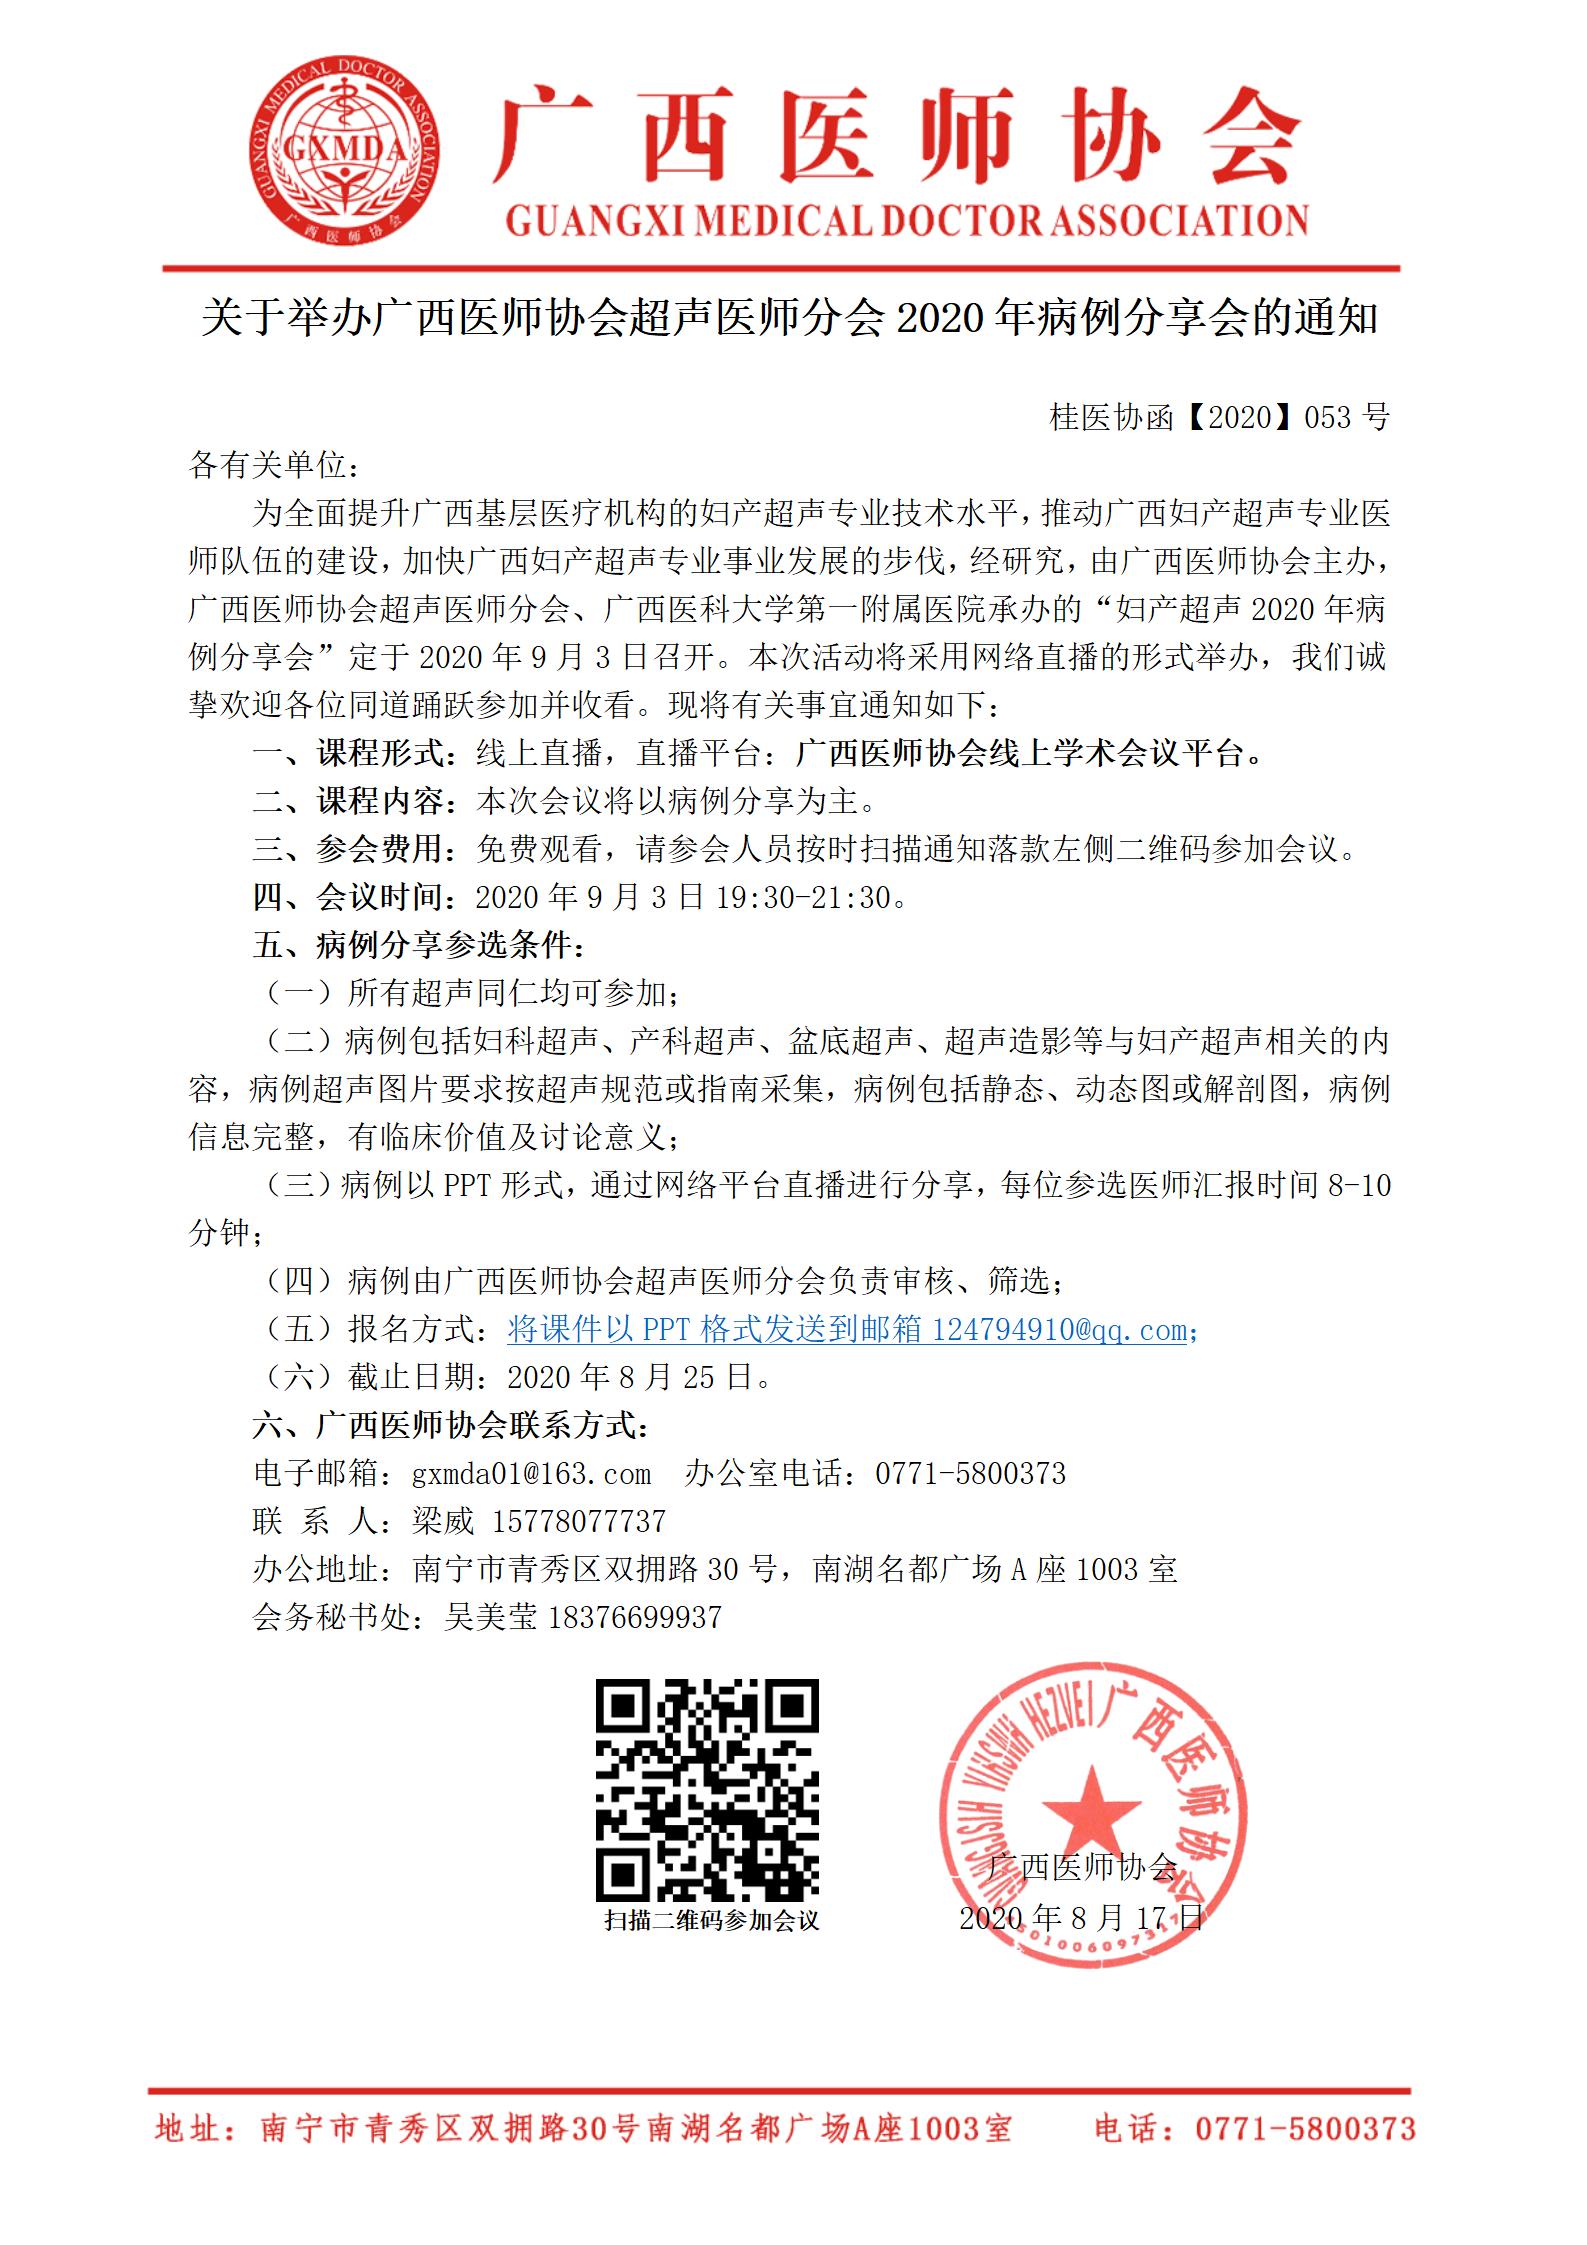 桂医协函【2020】053号 关于举办广西医师协会超声医师分会2020年病例分享会的通知_01.jpg